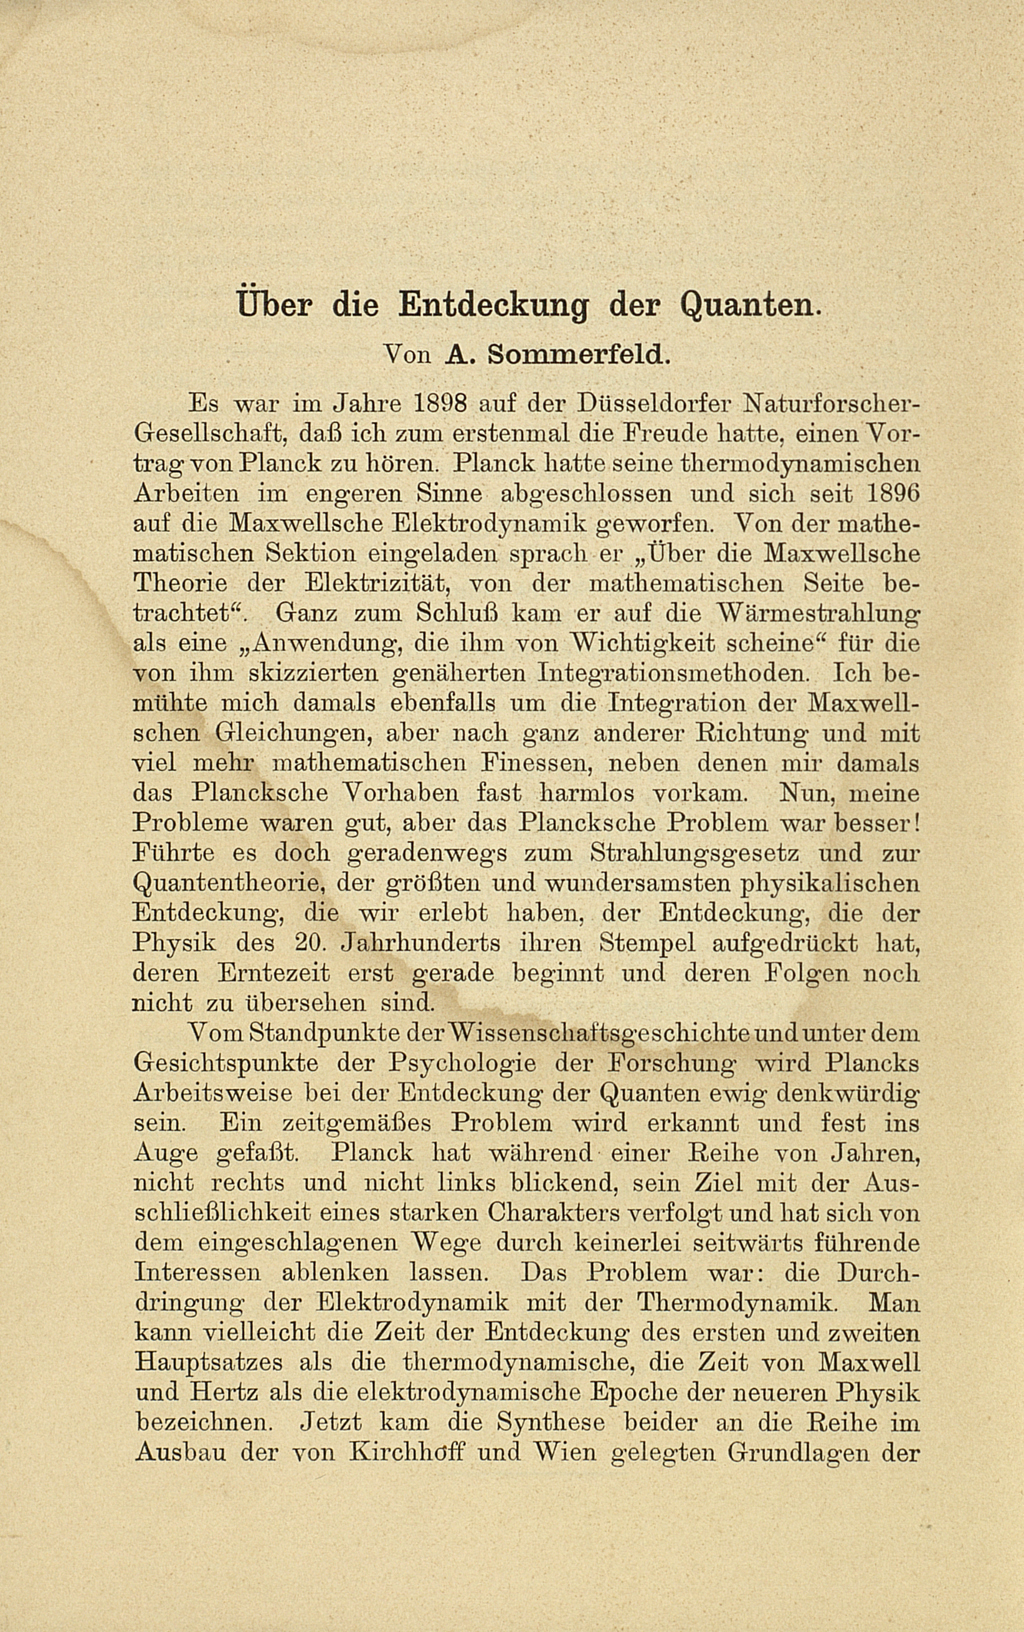 Zu sehen ist eine Textseite mit der Überschrift "Über die Entdeckung der Quanten. von A. Sommerfeld". 